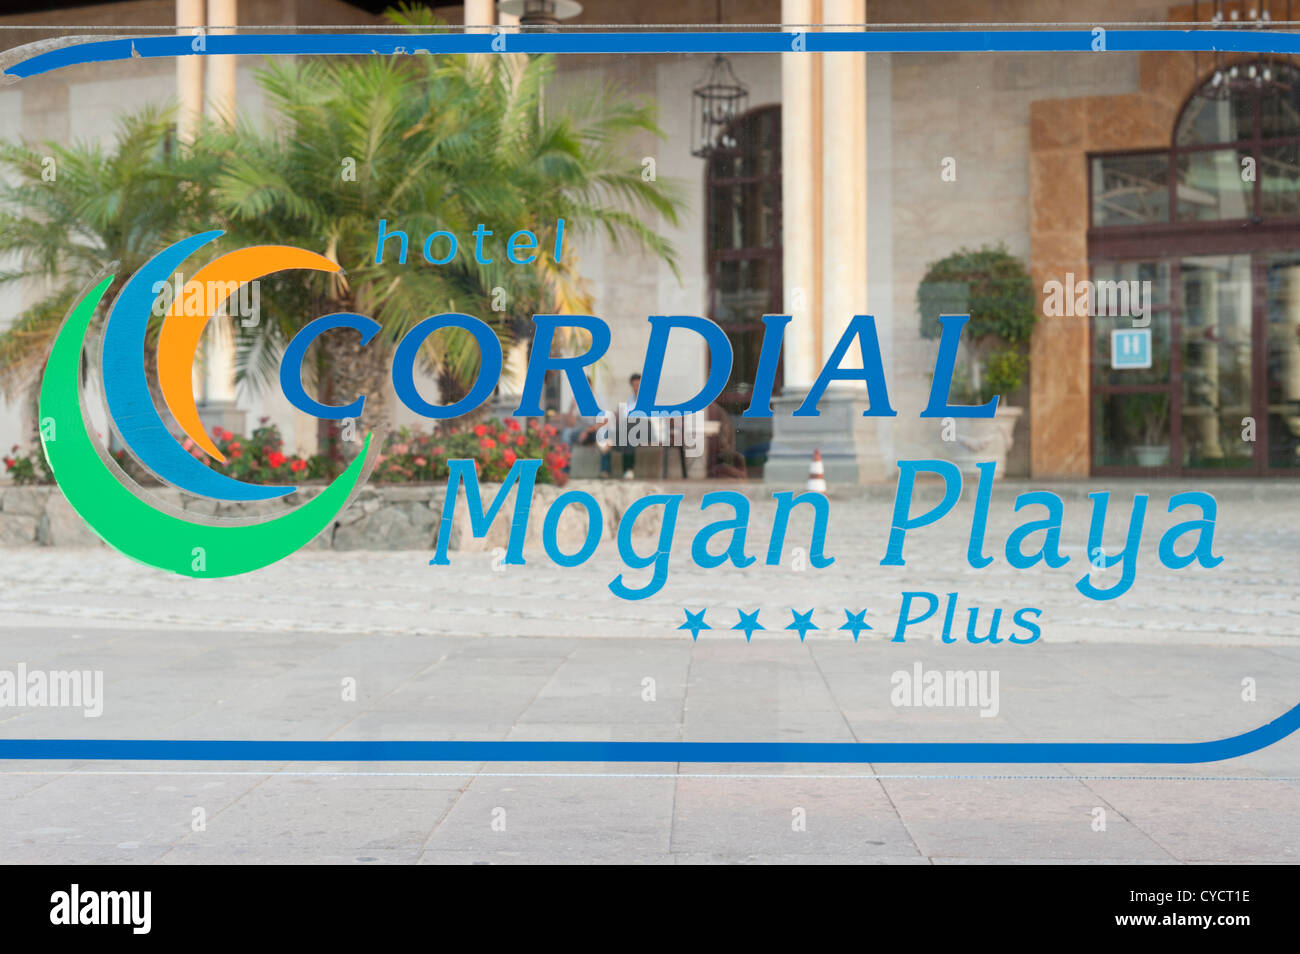 The Hotel Cordial Mogan Playa Puerto de Mogan Gran Canaria Canary Islands Spain Stock Photo